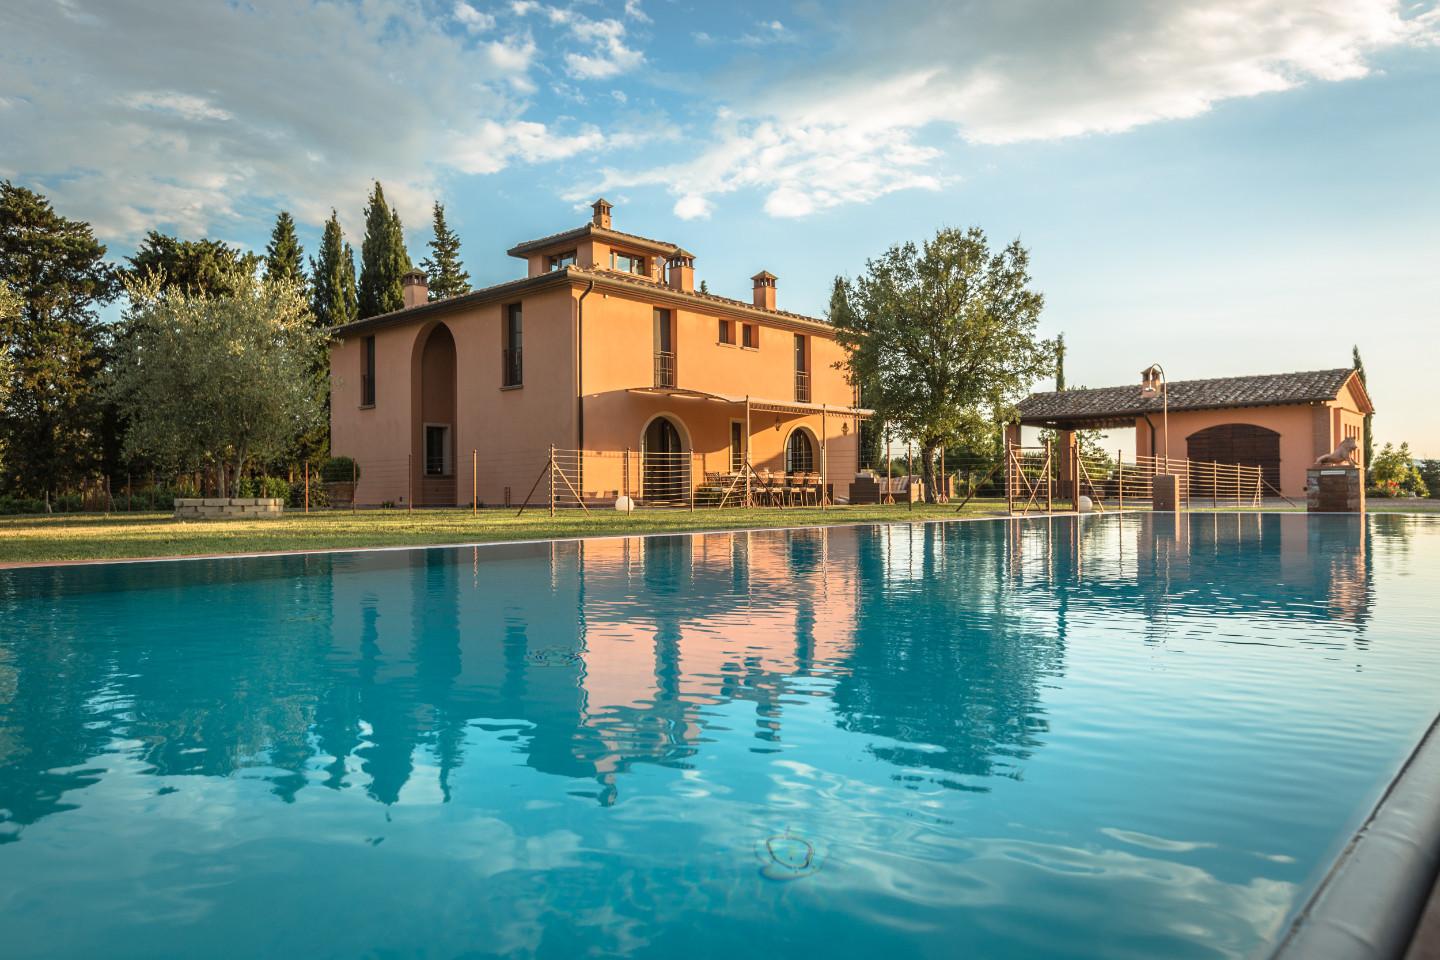 Villa for sale in Peccioli (PI)